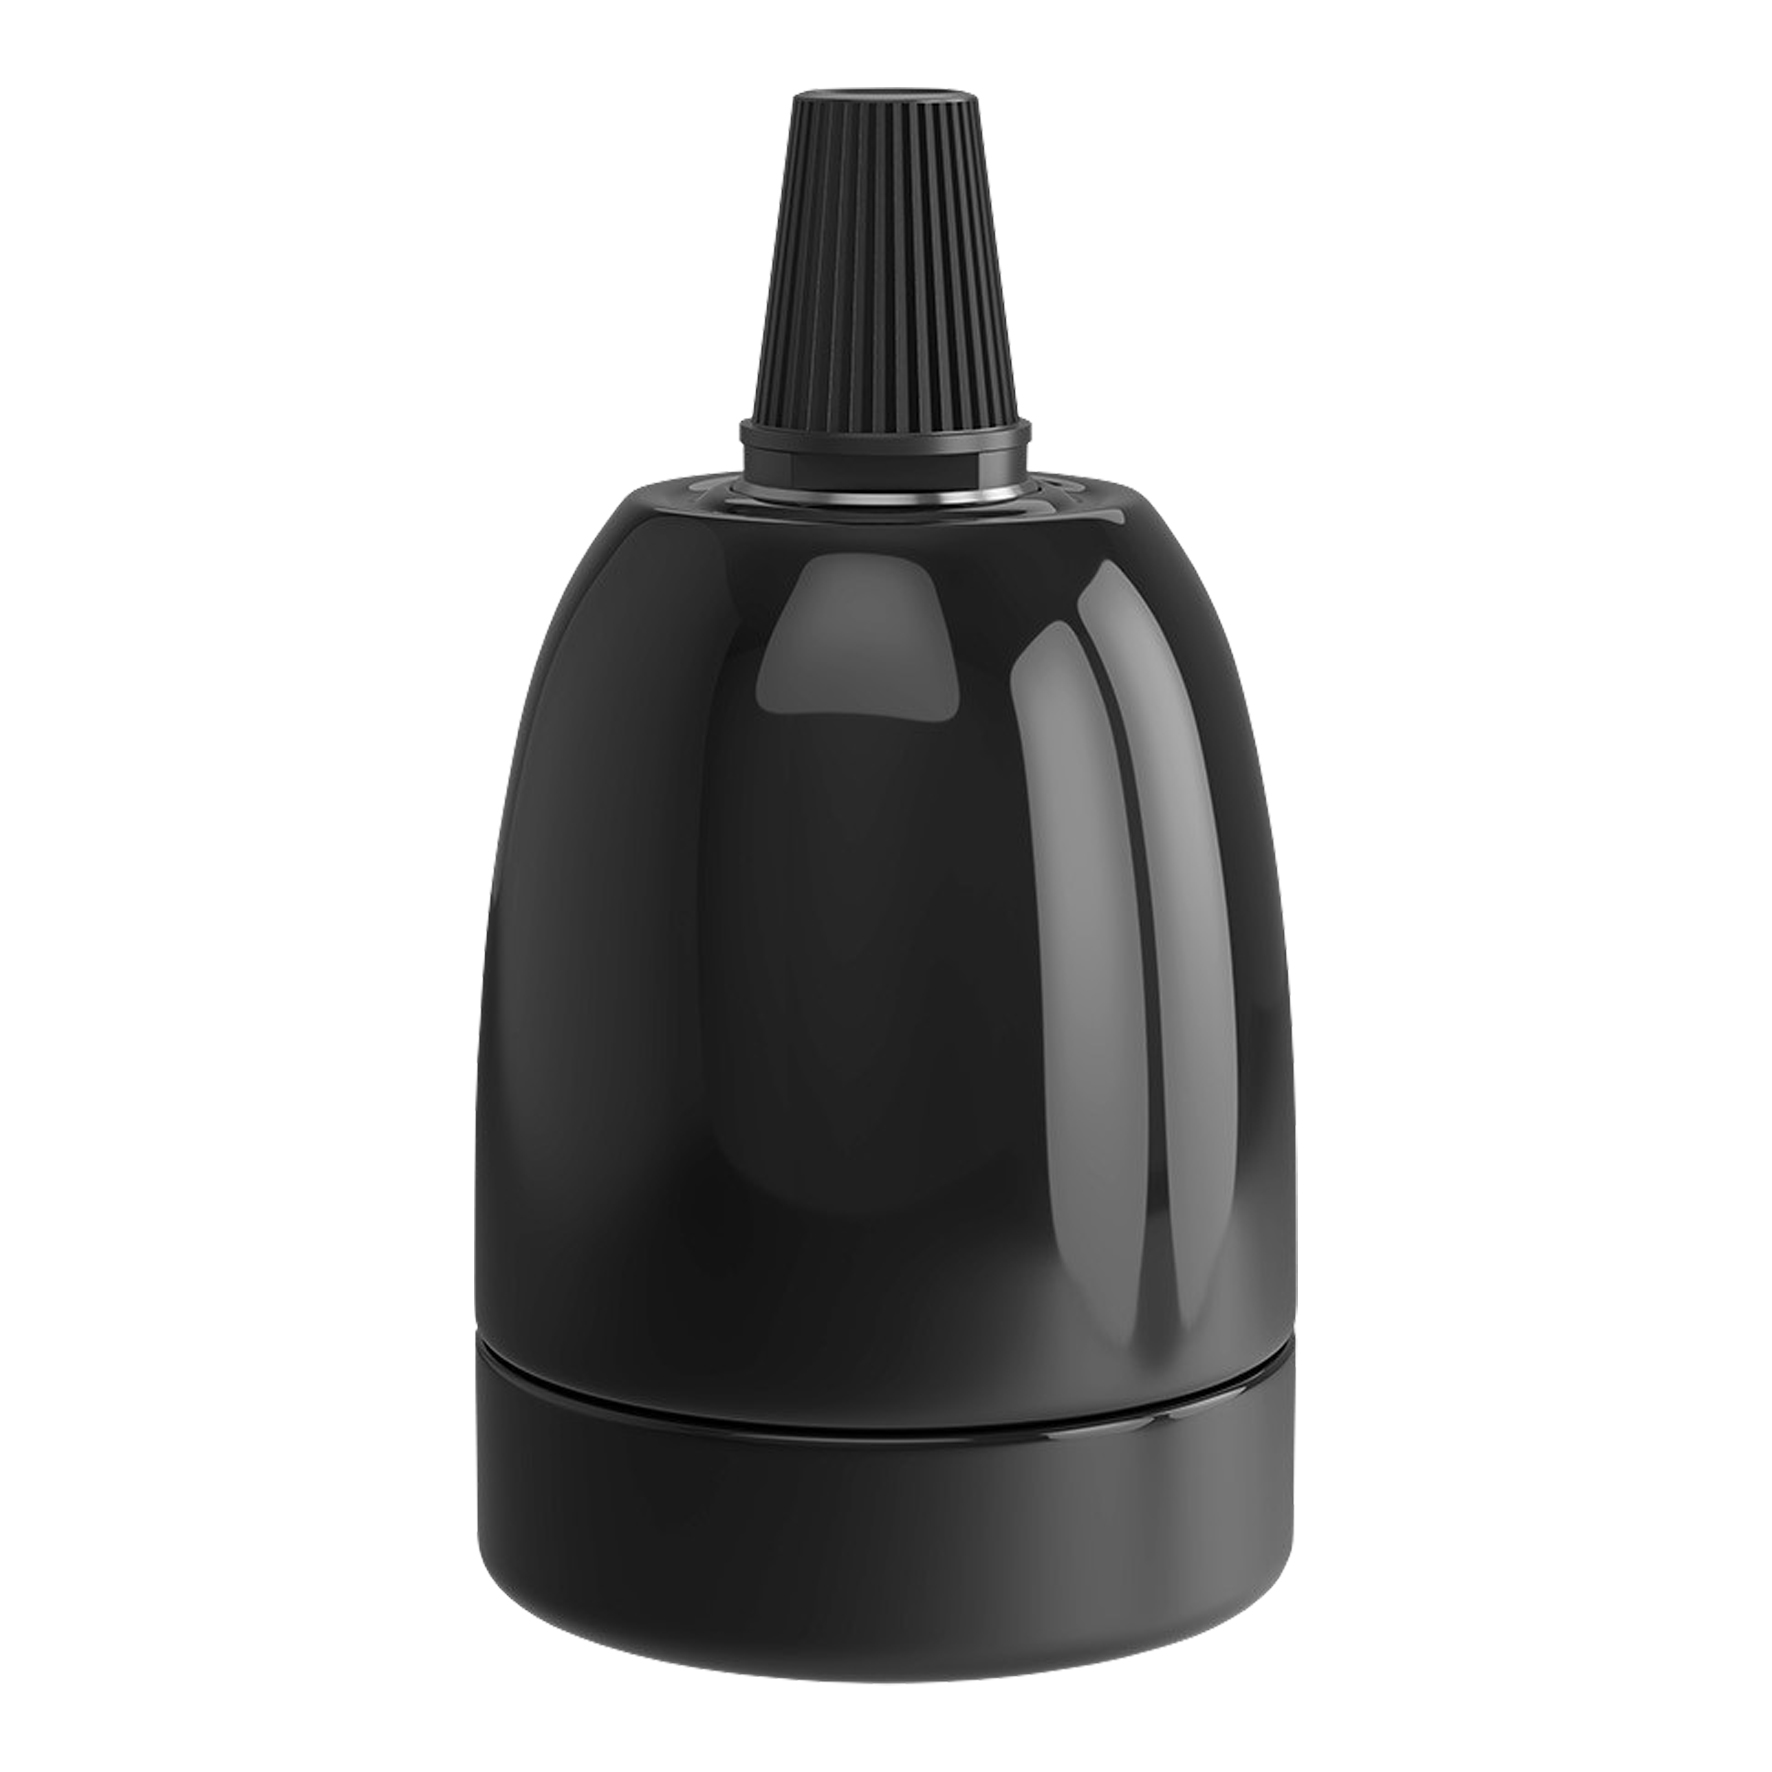 Lampholder E27 Ceramic Polished Black 47x63mm